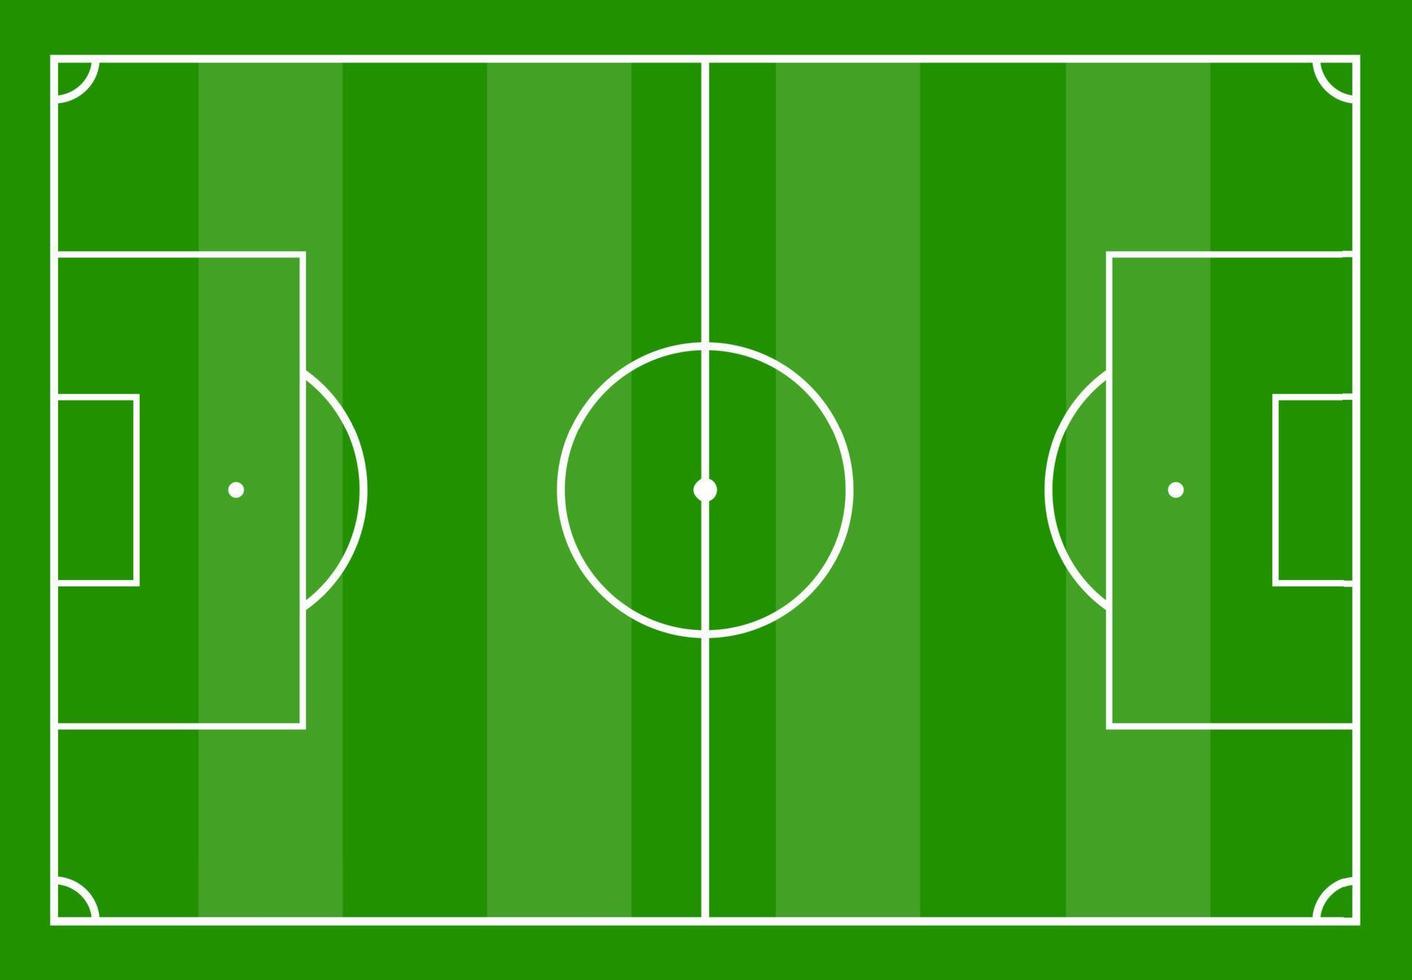 Amerikaans voetbal veld- met groen gras. vector illustratie